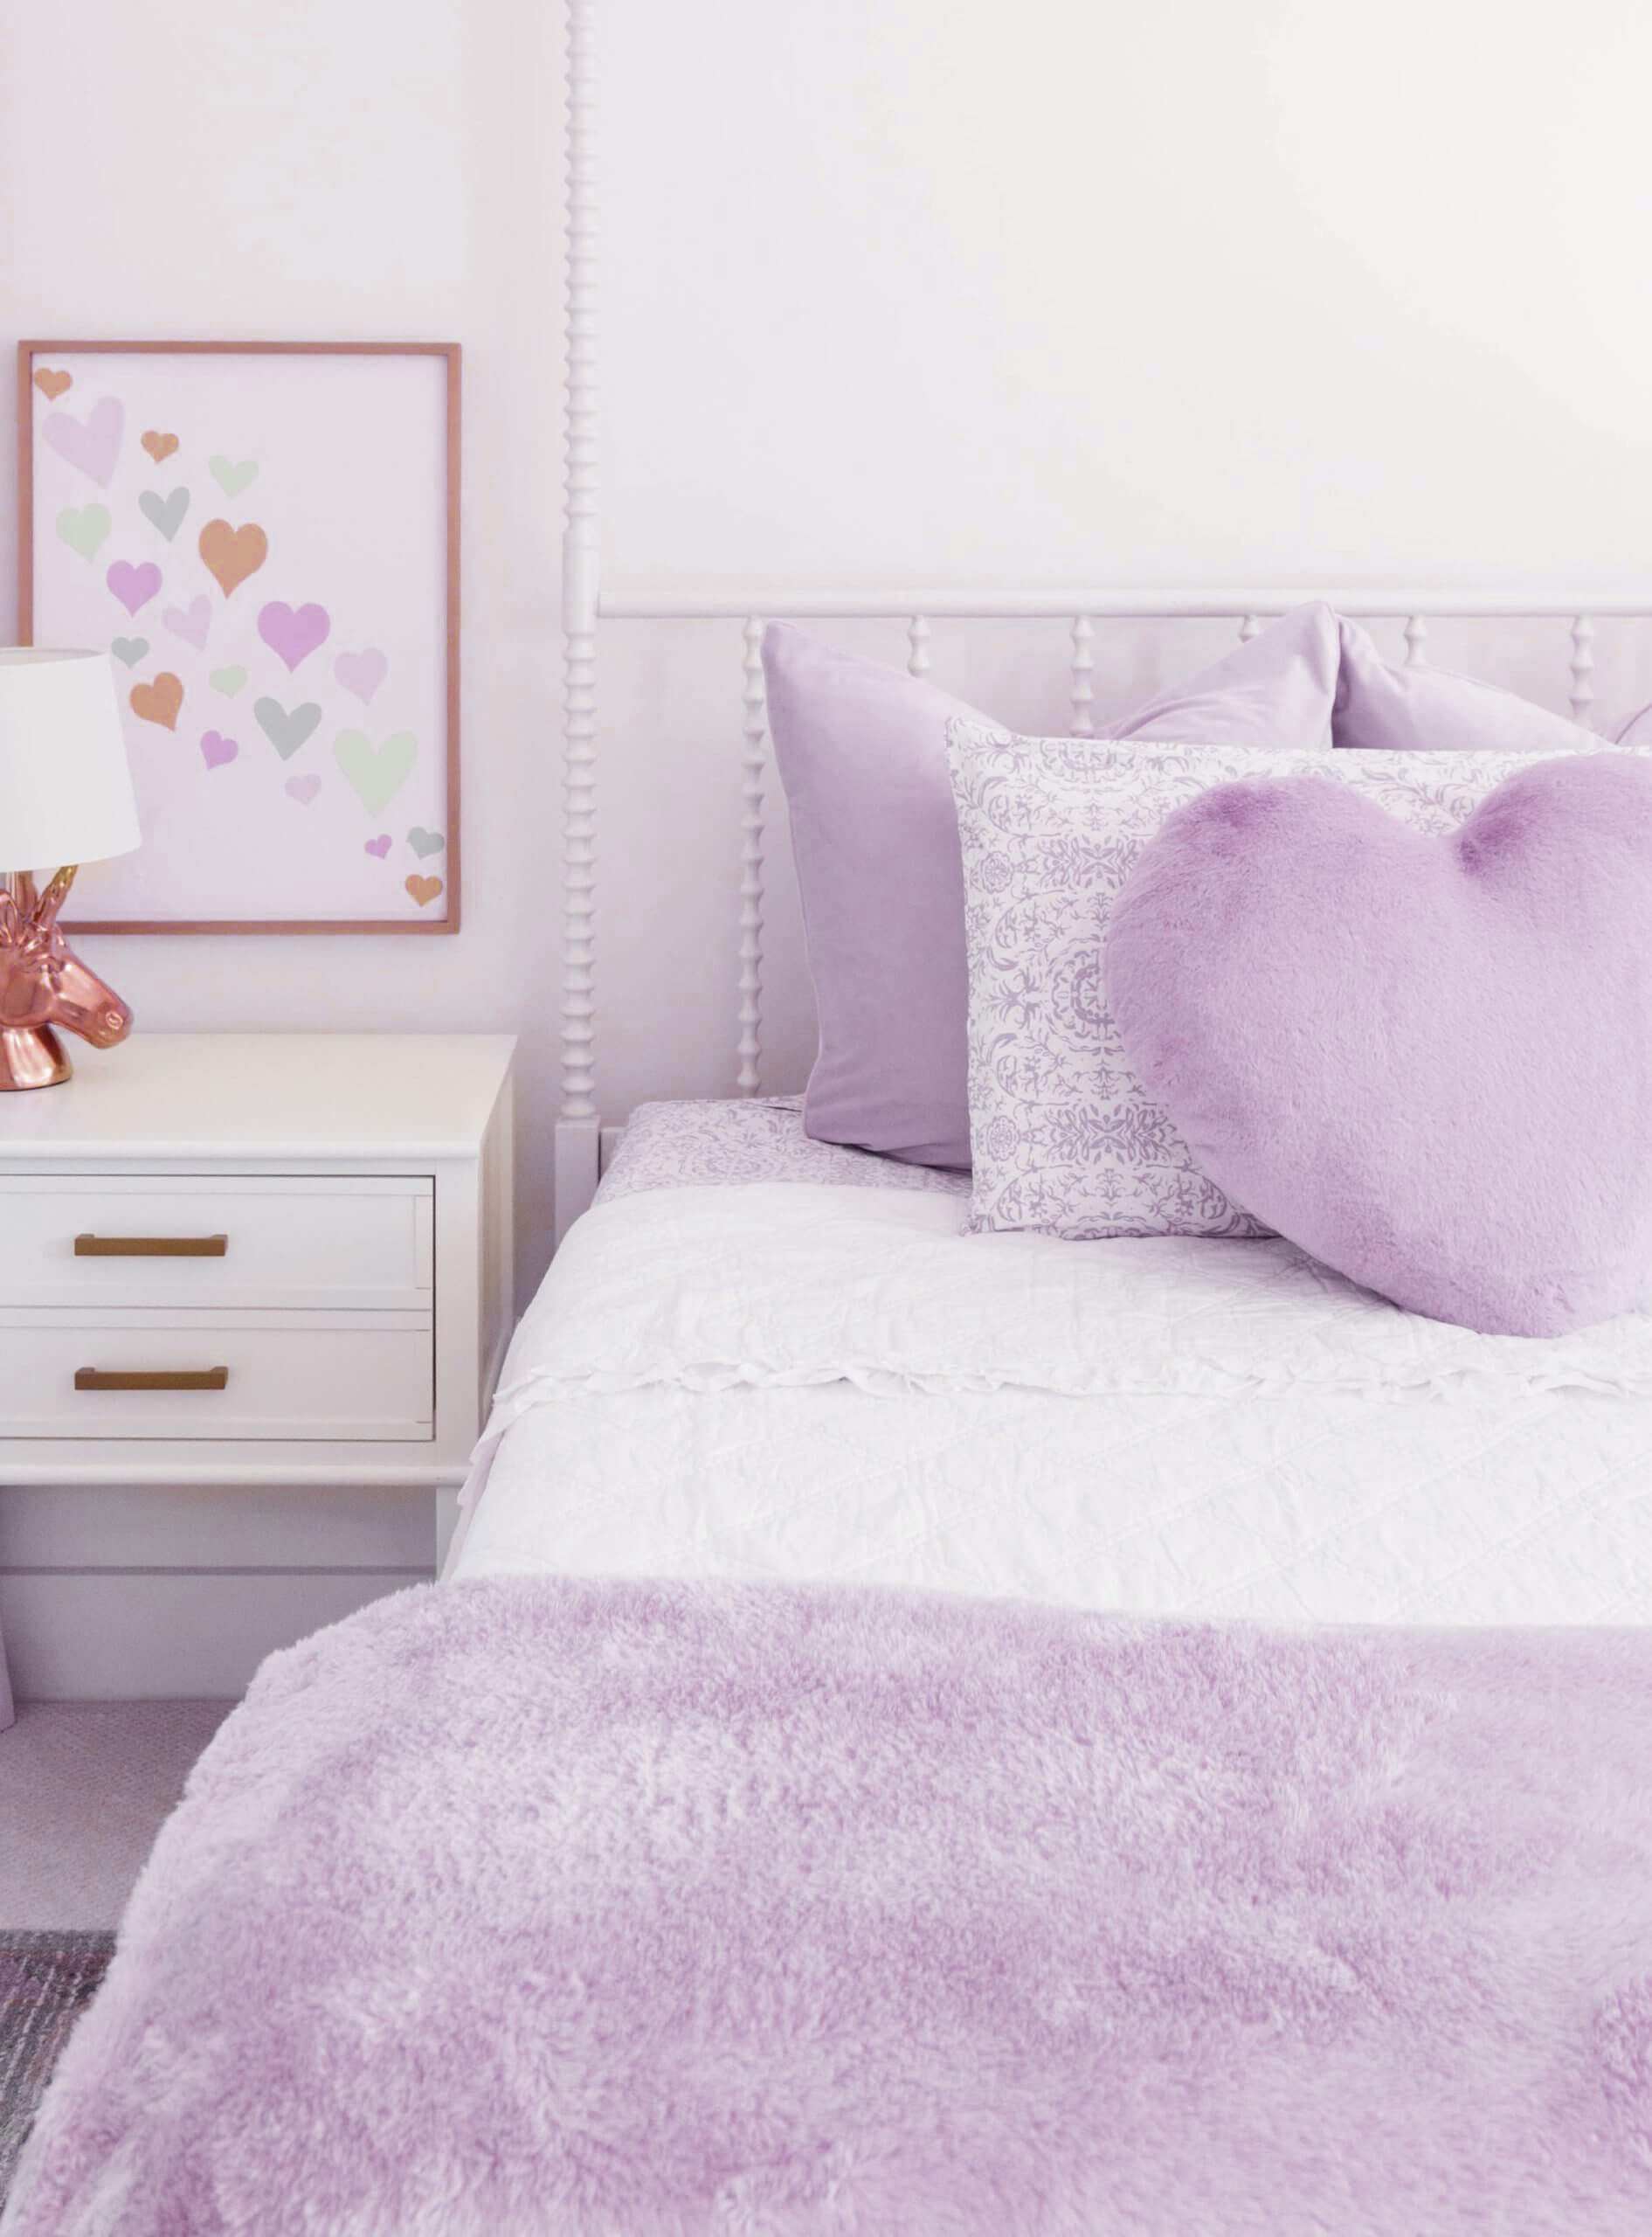 Mẫu phòng ngủ màu tím cho bạn gái ngọt ngào